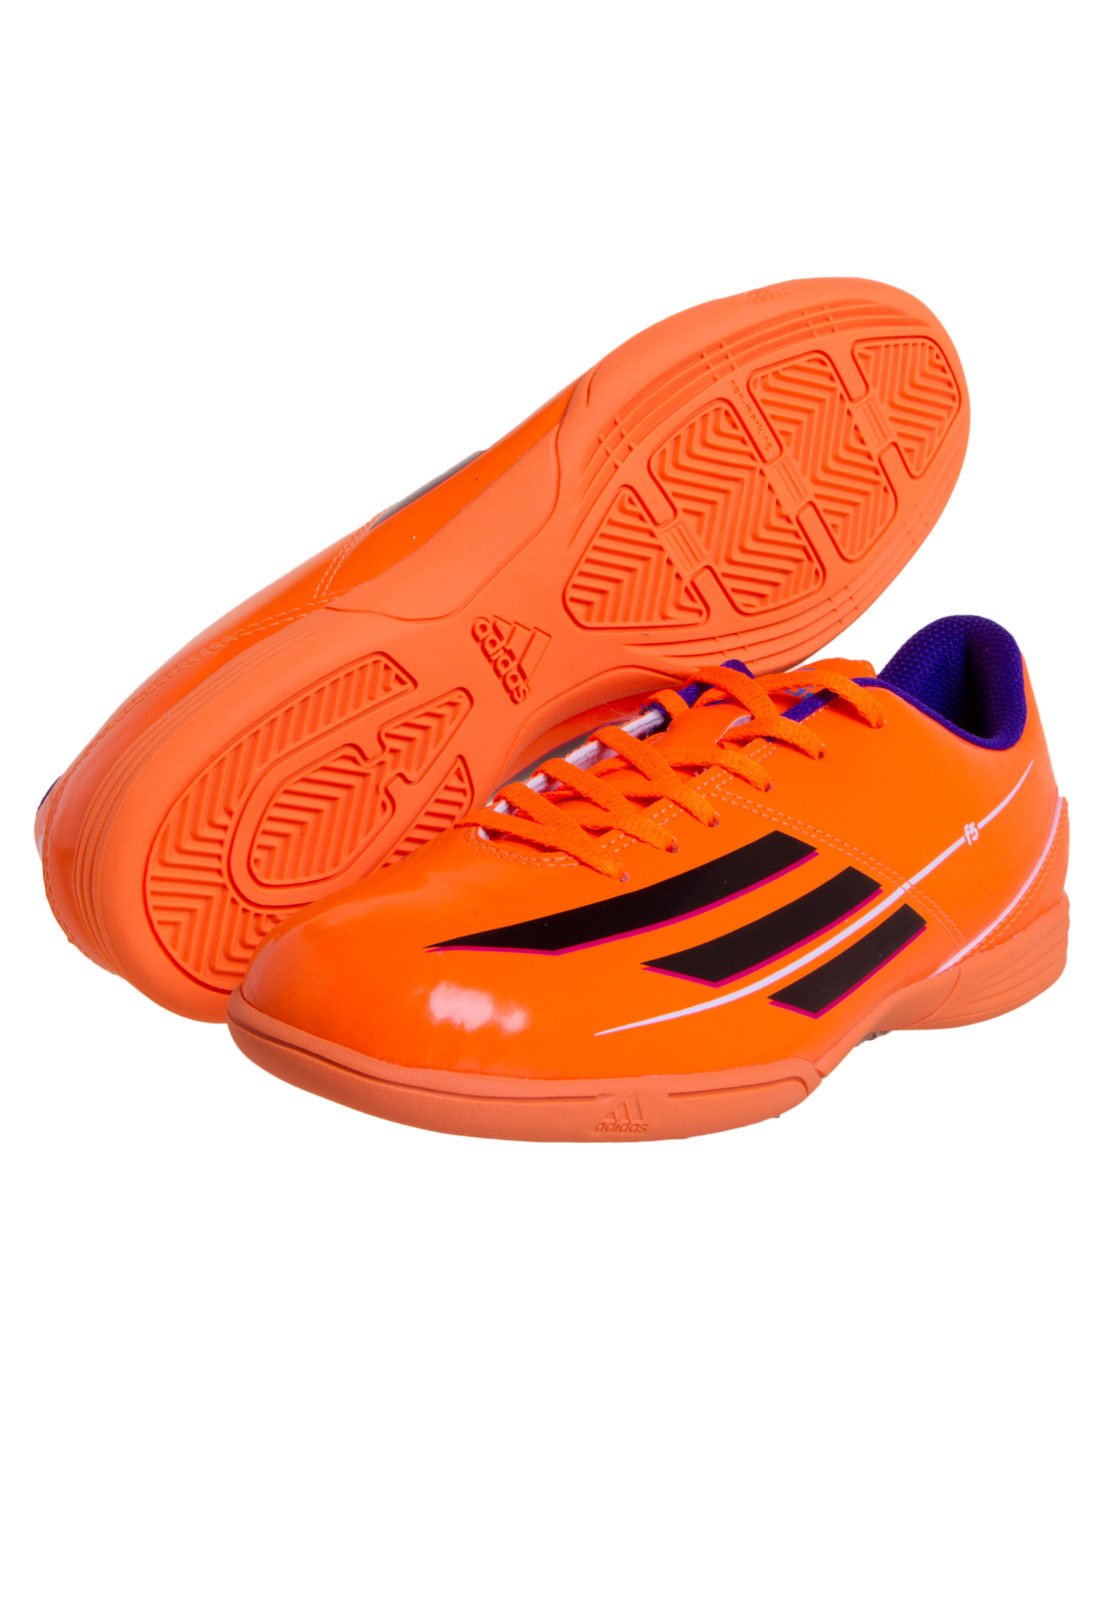 tenis futsal adidas laranja